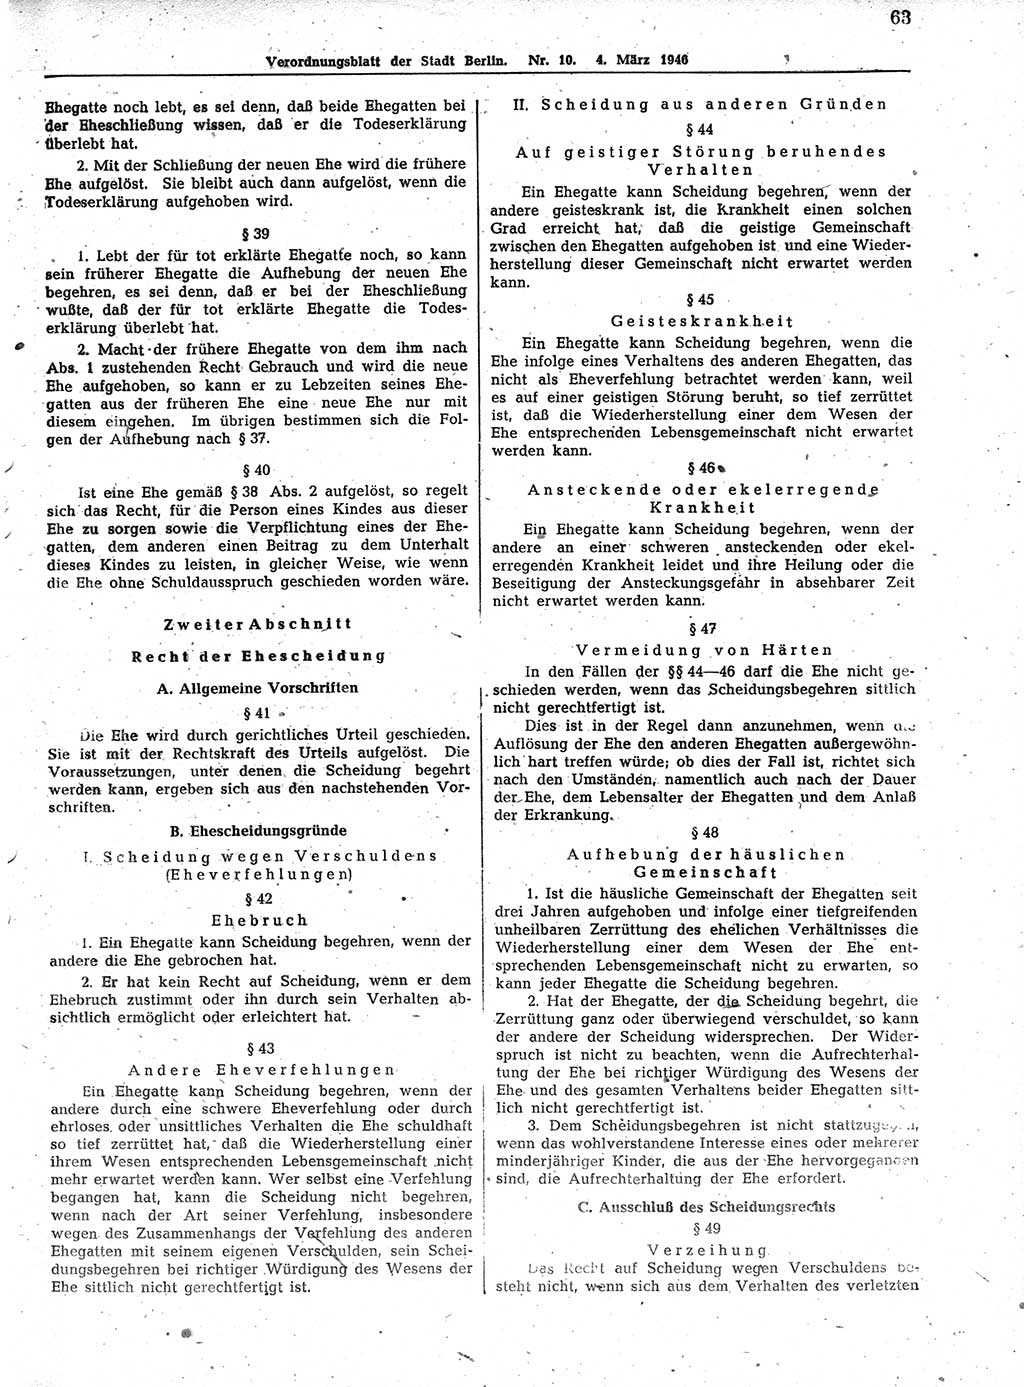 Verordnungsblatt (VOBl.) der Stadt Berlin, für Groß-Berlin 1946, Seite 63 (VOBl. Bln. 1946, S. 63)